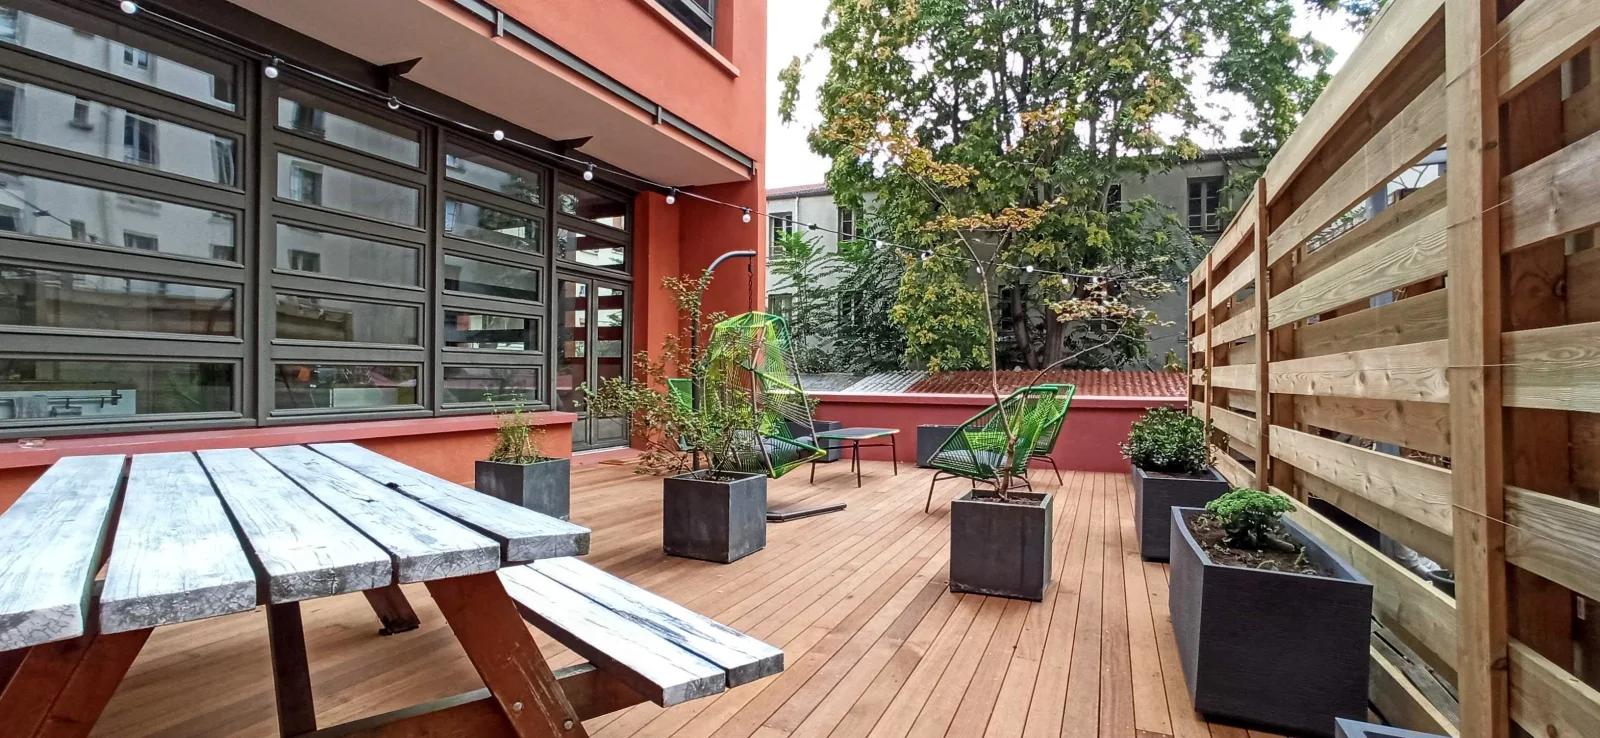 Espace 6 chambres | terrasse | loft d'architecte - 2